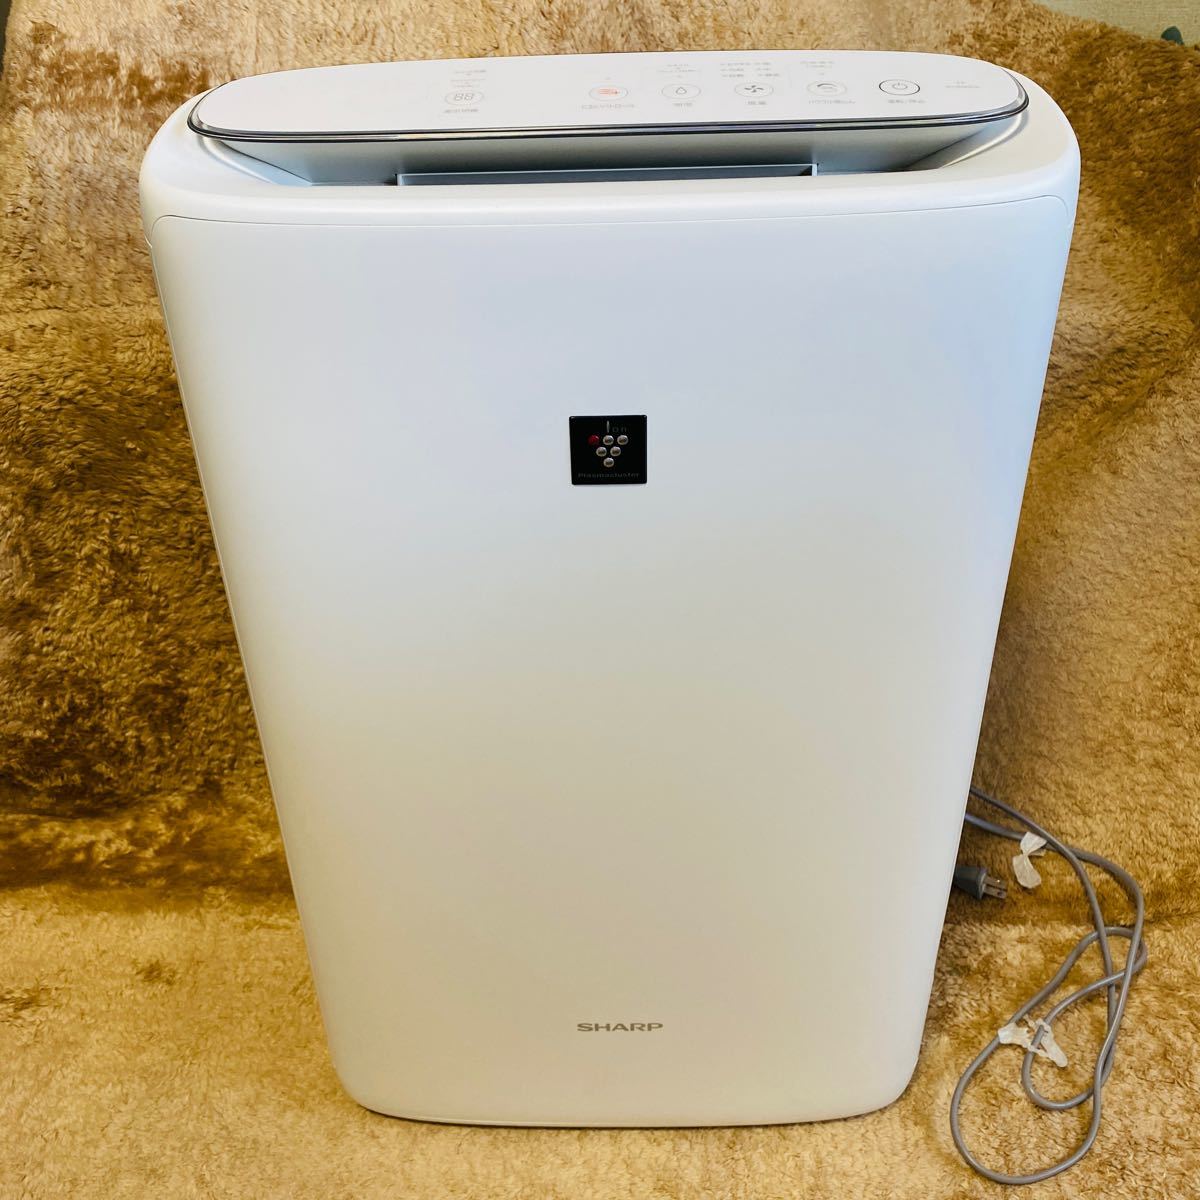 冷暖房/空調 空気清浄器 2021年 シャープ 加湿空気清浄機 ki-s50e8-w 空気清浄器 アウトレット 